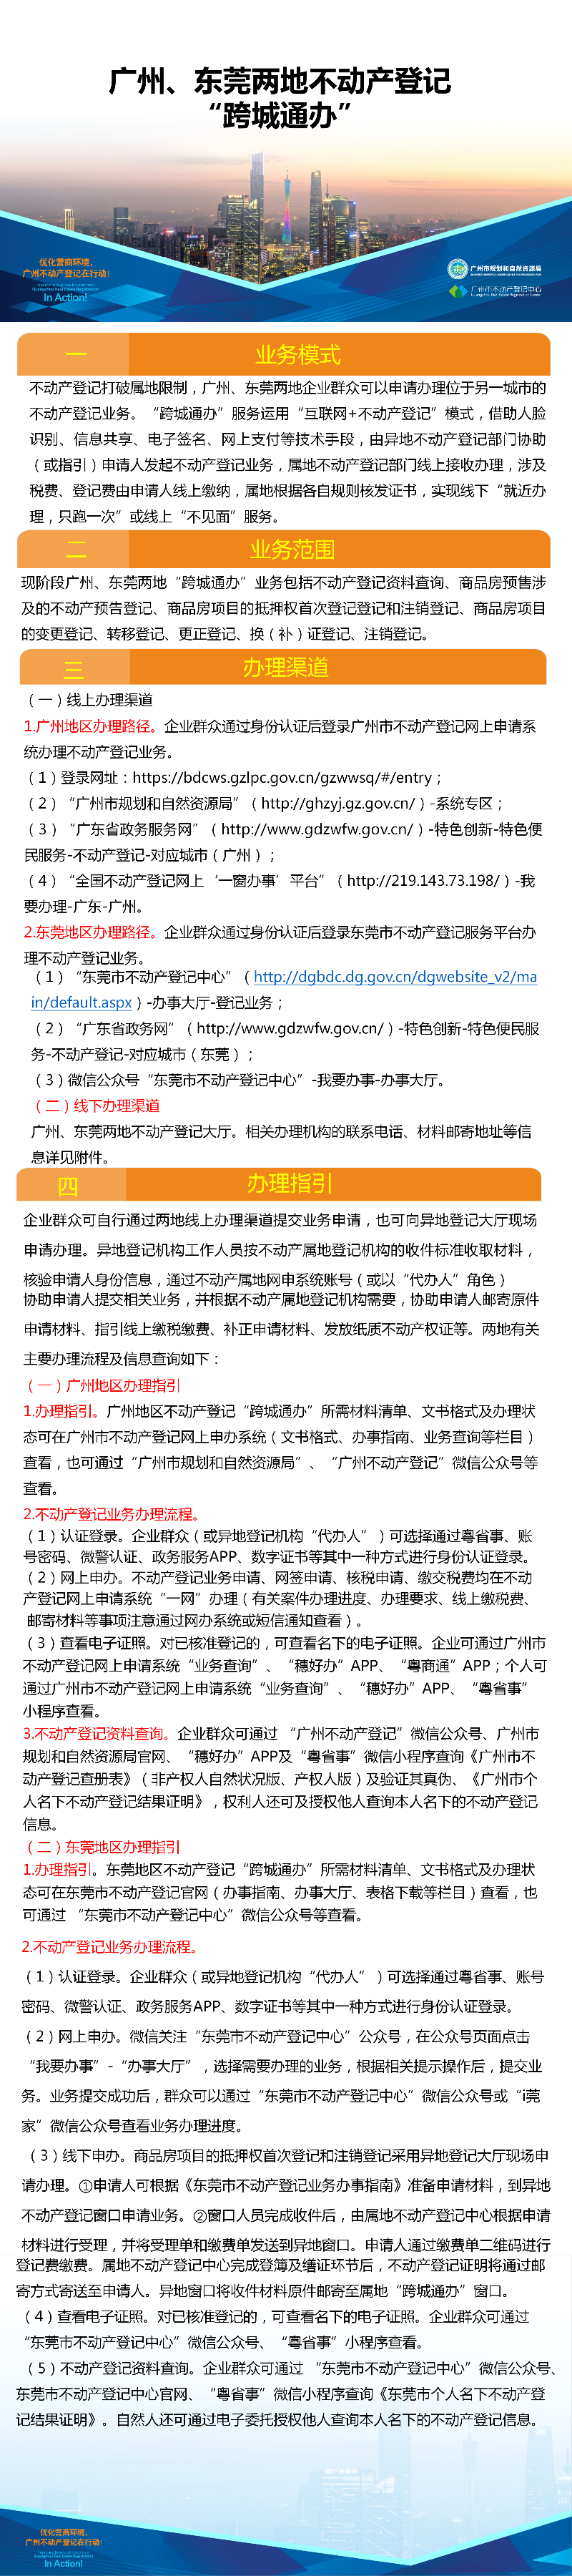 一图读懂-广州、东莞两地不动产登记业务“跨城通办”.png